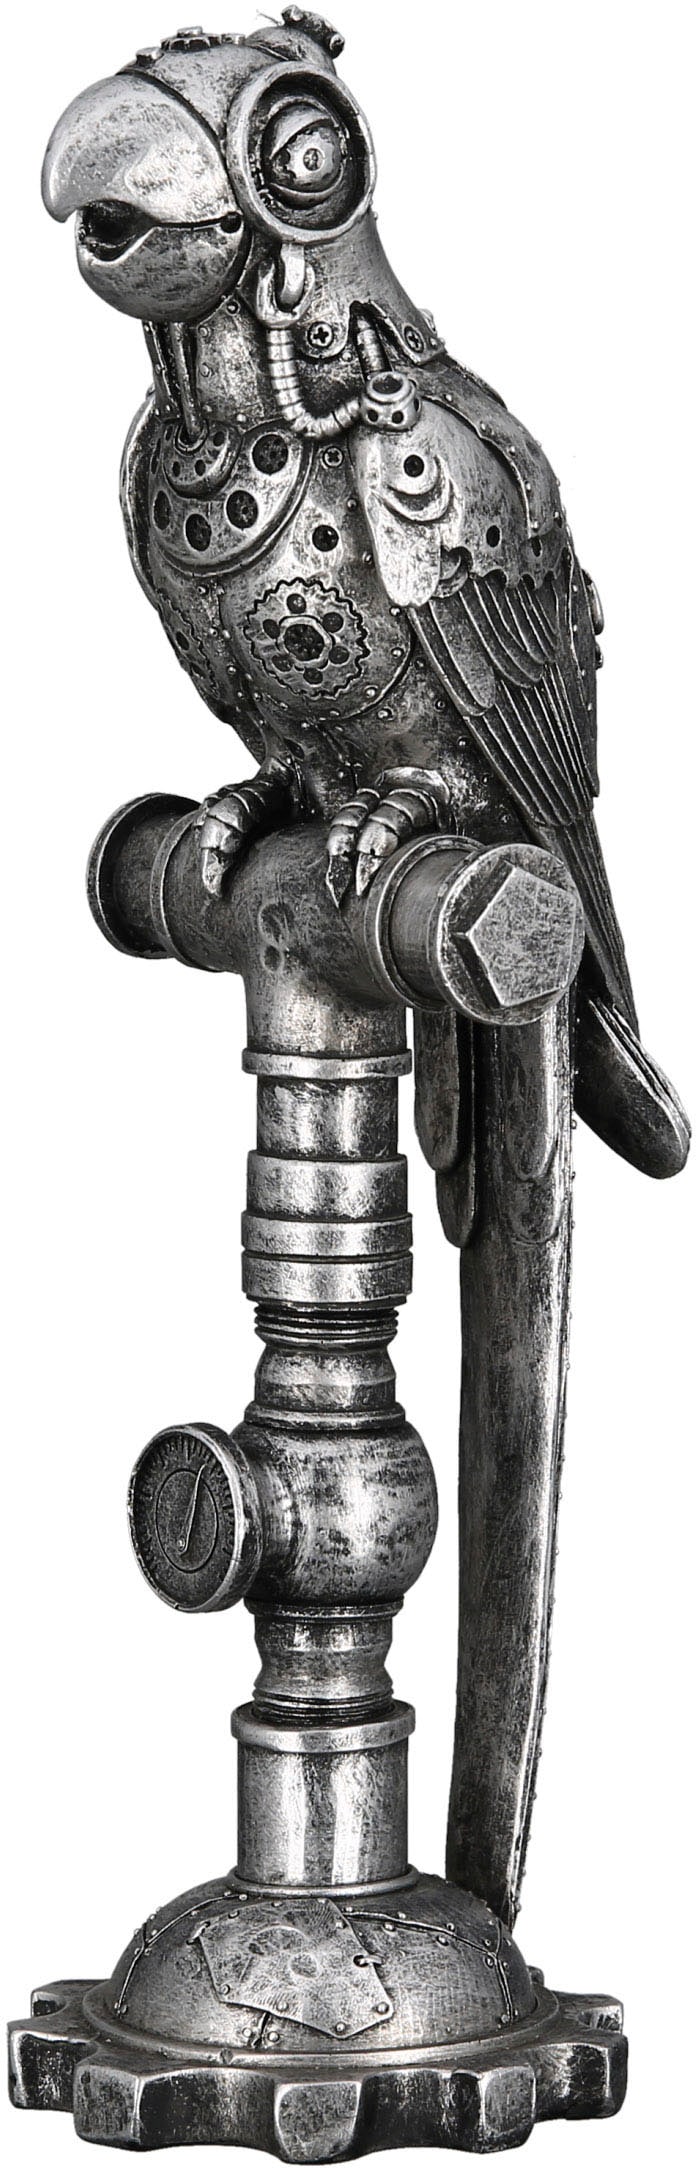 Rechnung by Tierfigur auf »Skulptur kaufen Parrot Gilde Casablanca Steampunk«